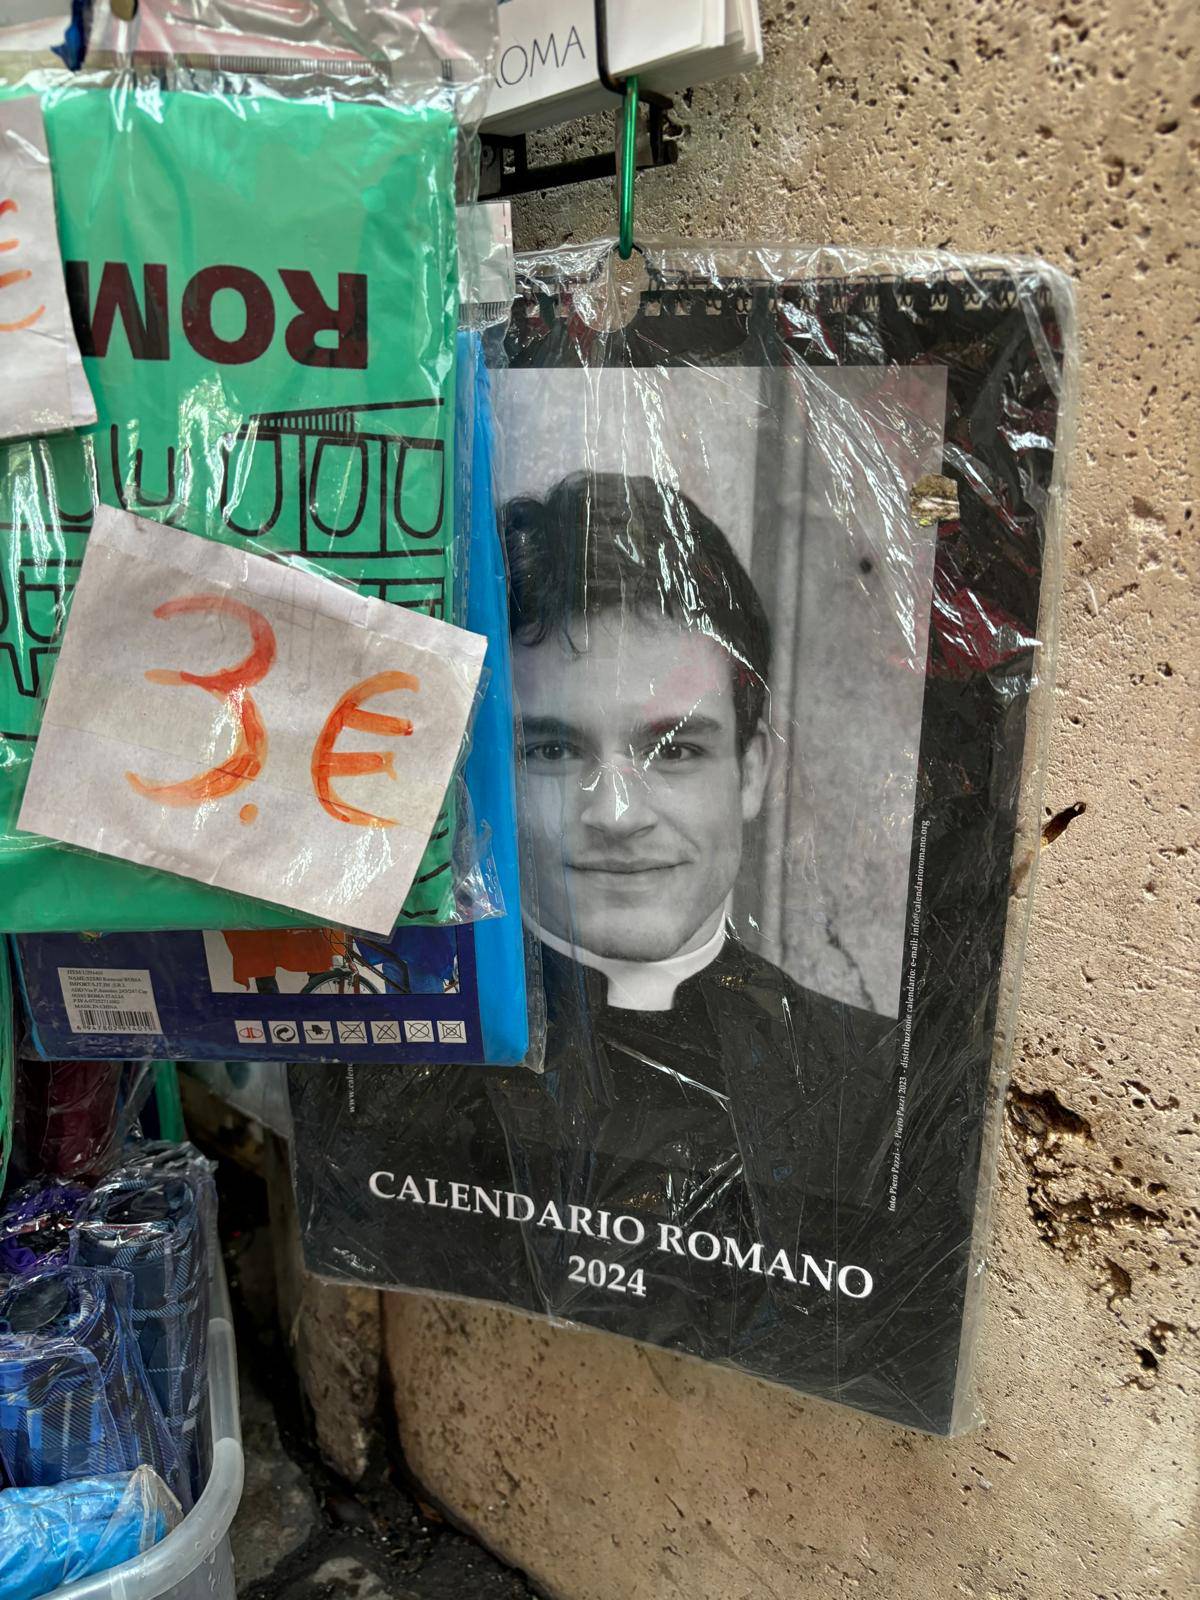 I dalje se prodaje kontroverzni kalendar po Rimu: 'Vatikan se zgrozio zbog seksi svećenika'